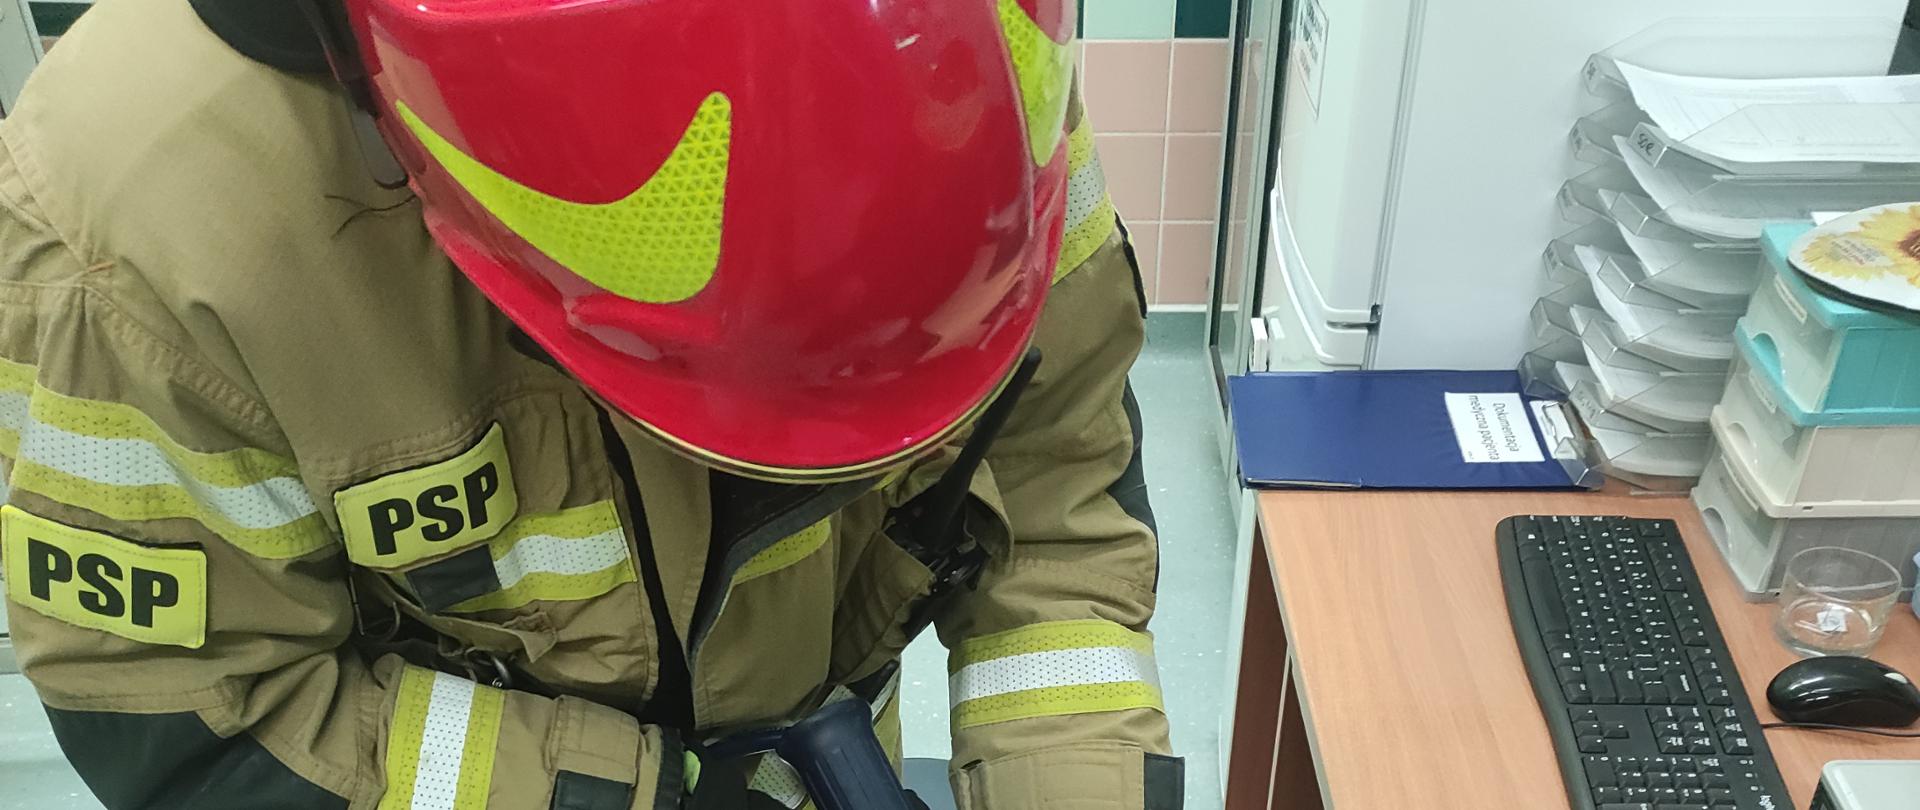 Pomieszczenie szpitala w Brzezinach, strażak w pełnym umundurowaniu bojowym przy pomocy narzędzi hydraulicznego w trakcie cięcia obrączki znajdującej się na opuchniętym palcu poszkodowanego mężczyzny.